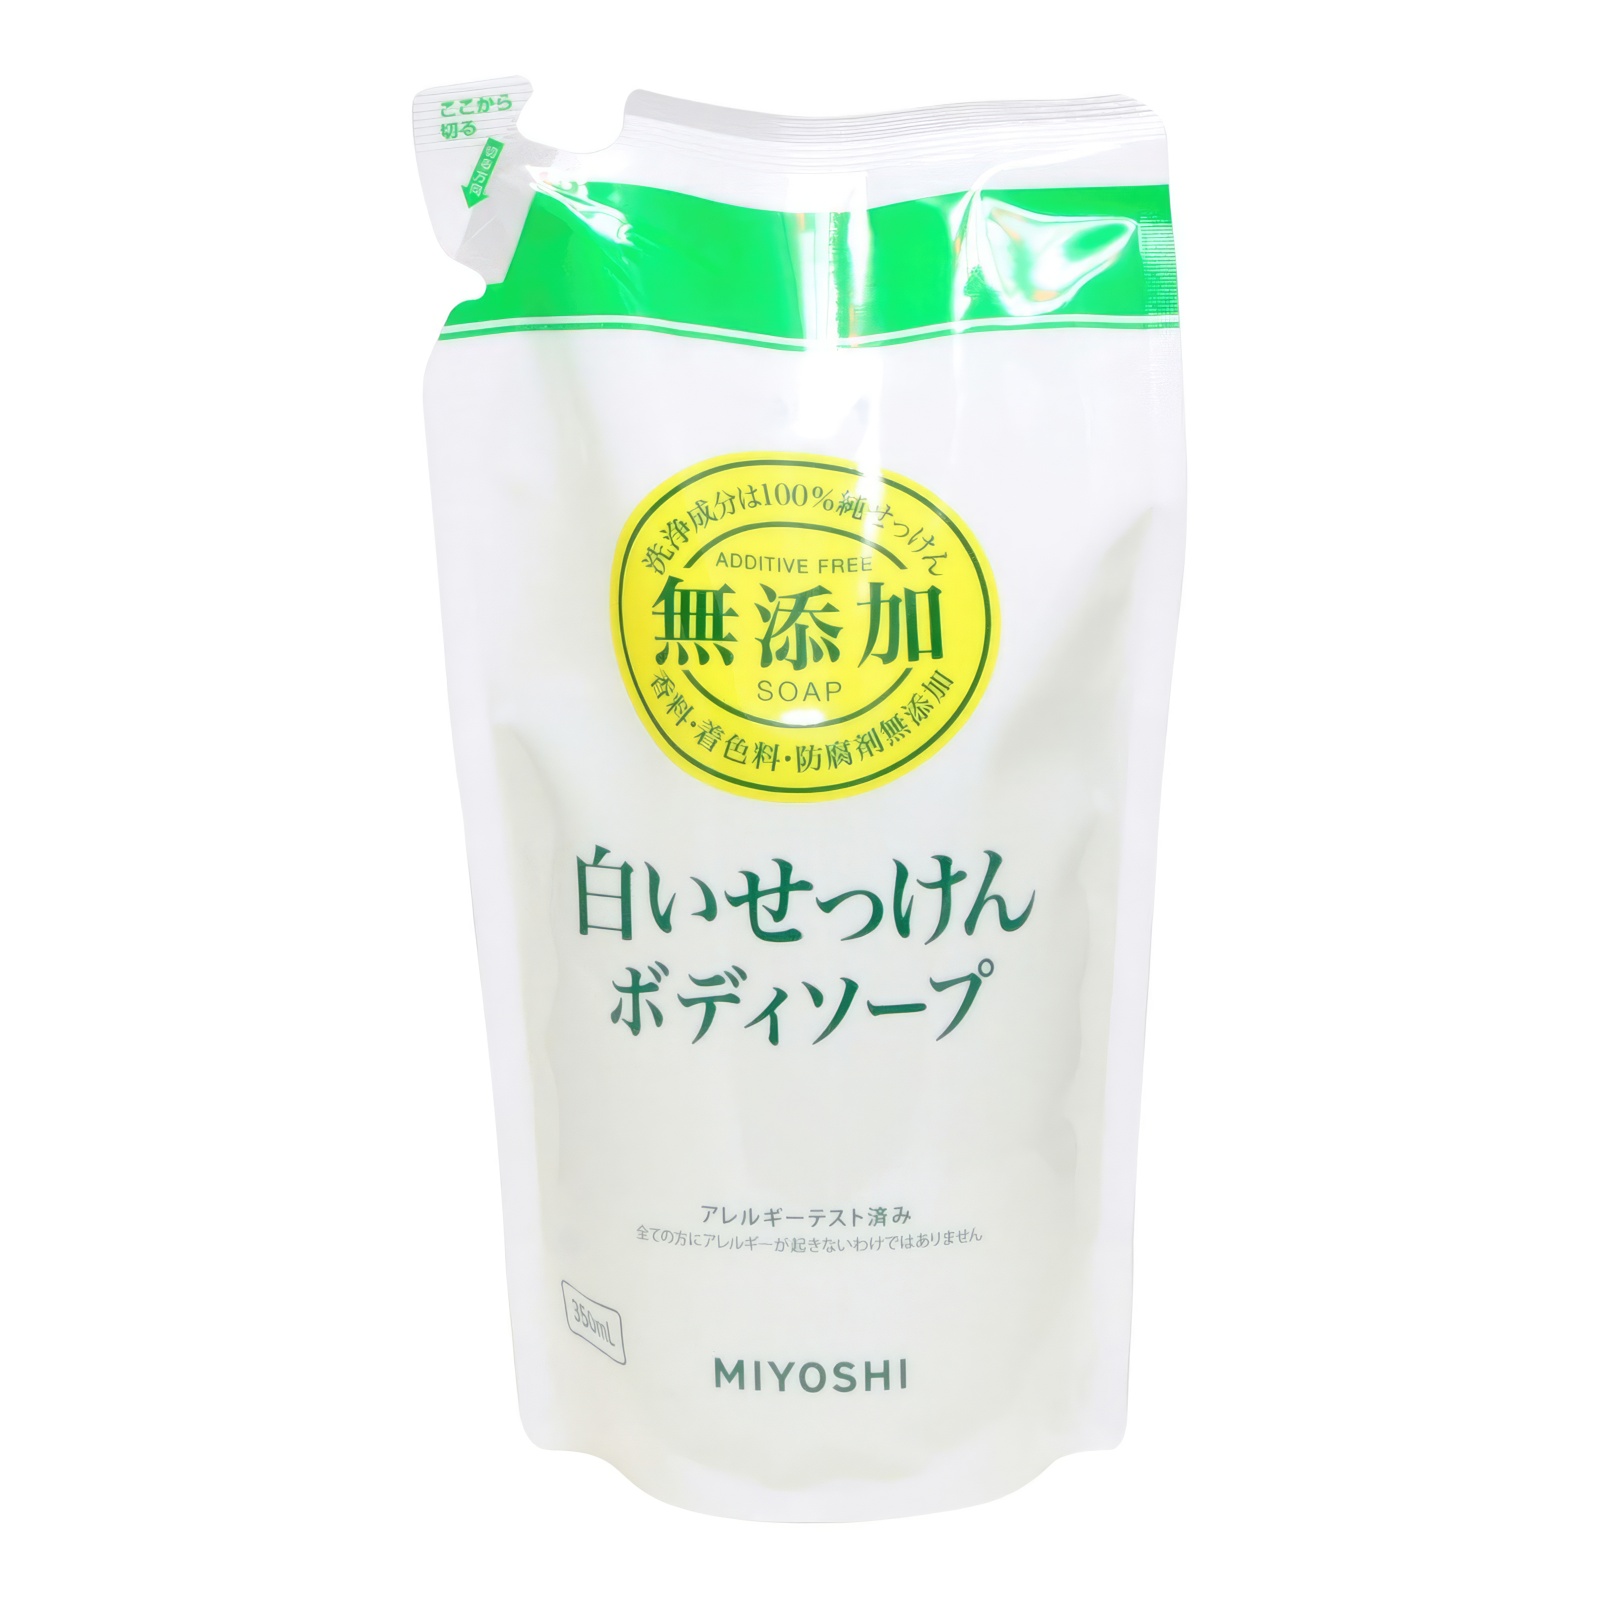 Натуральное жидкое мыло MIYOSHI эко для тела 350 мл з б жидкое мыло для рук и тела synergetic ущий инжир и лотос натуральное 0 38л